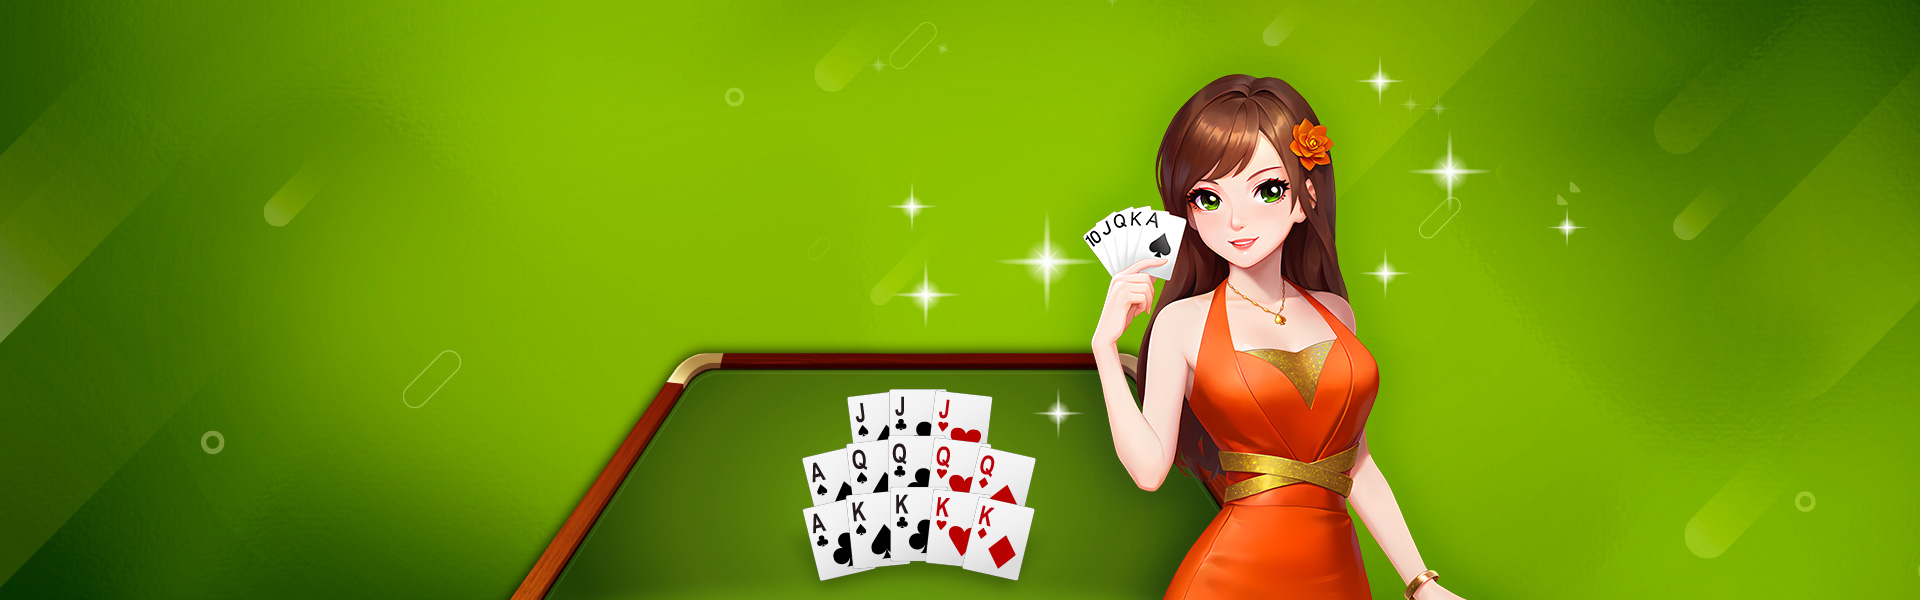 poker13